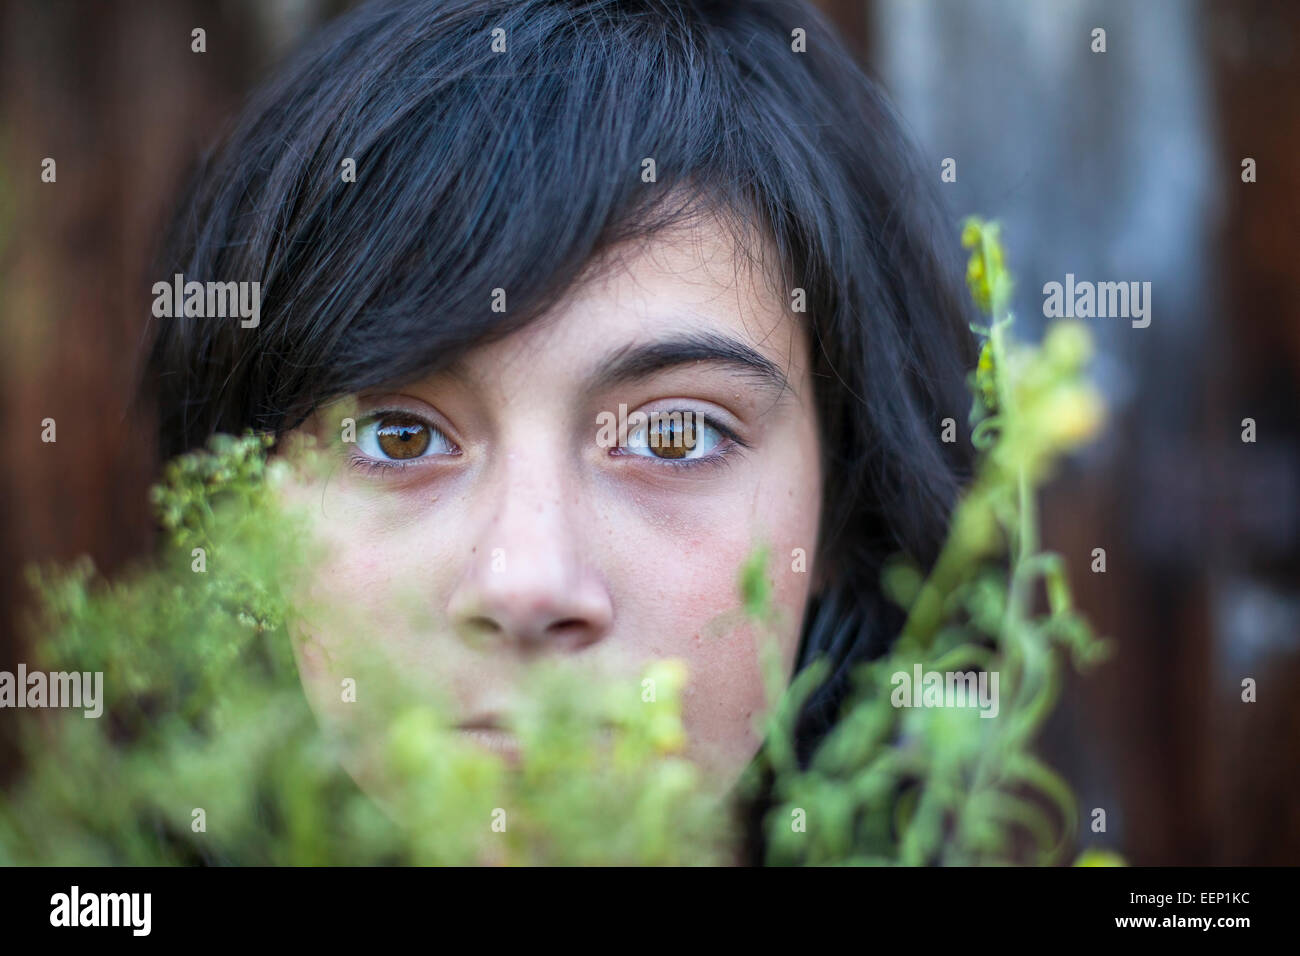 Primo piano di nero dai capelli teen ragazza con occhi espressivi, nascosta nel verde del giardino. Emo. Foto Stock